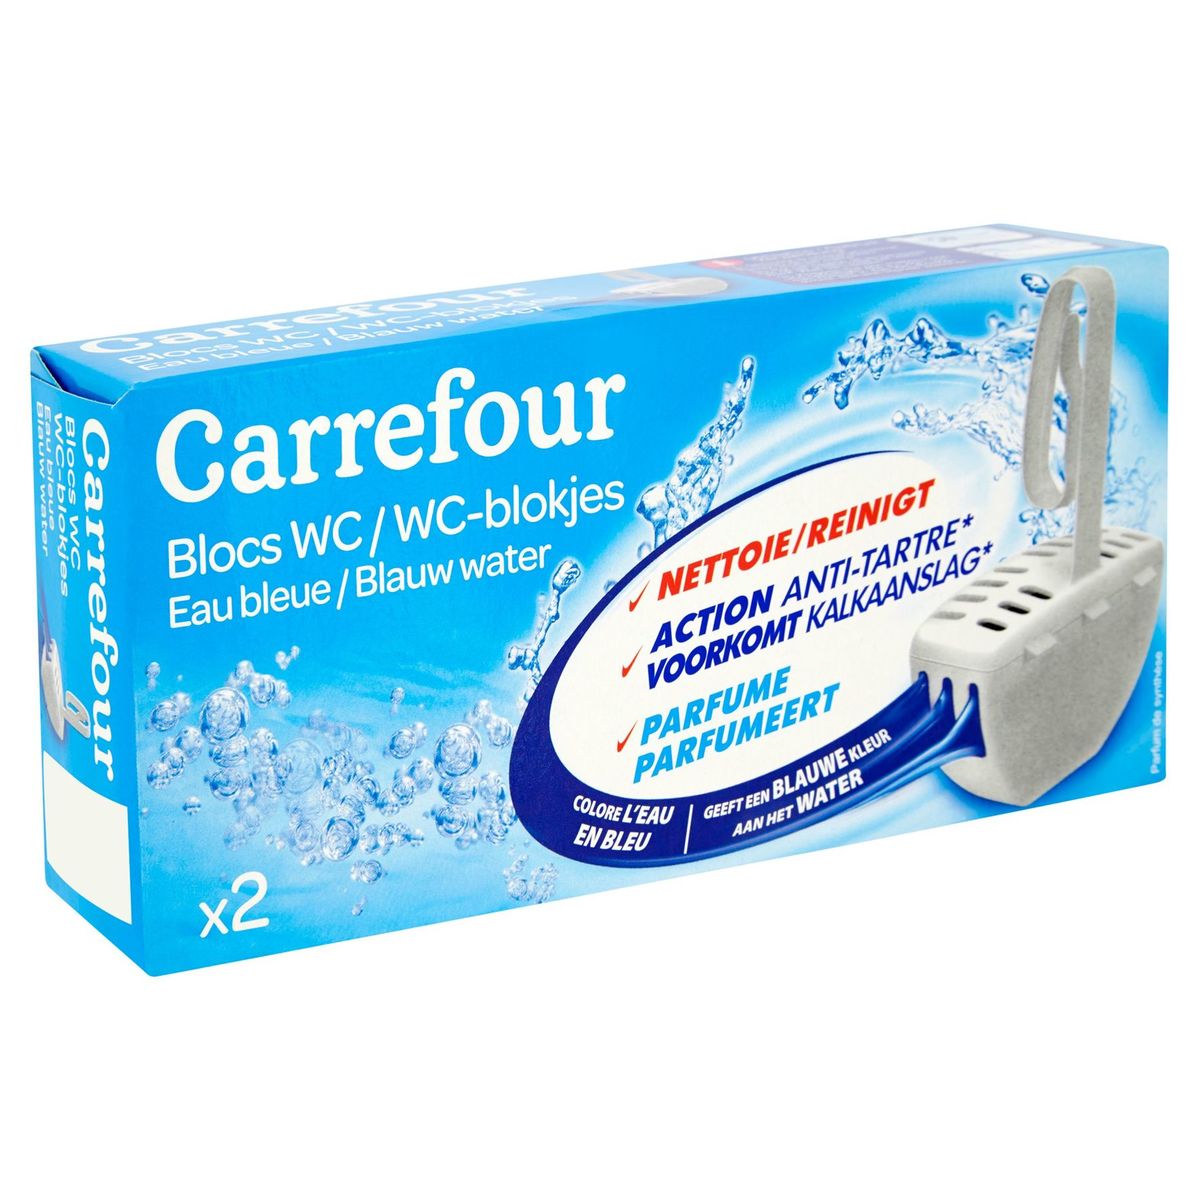 Carrefour Blocs WC Eau Bleue 2 x 40 g